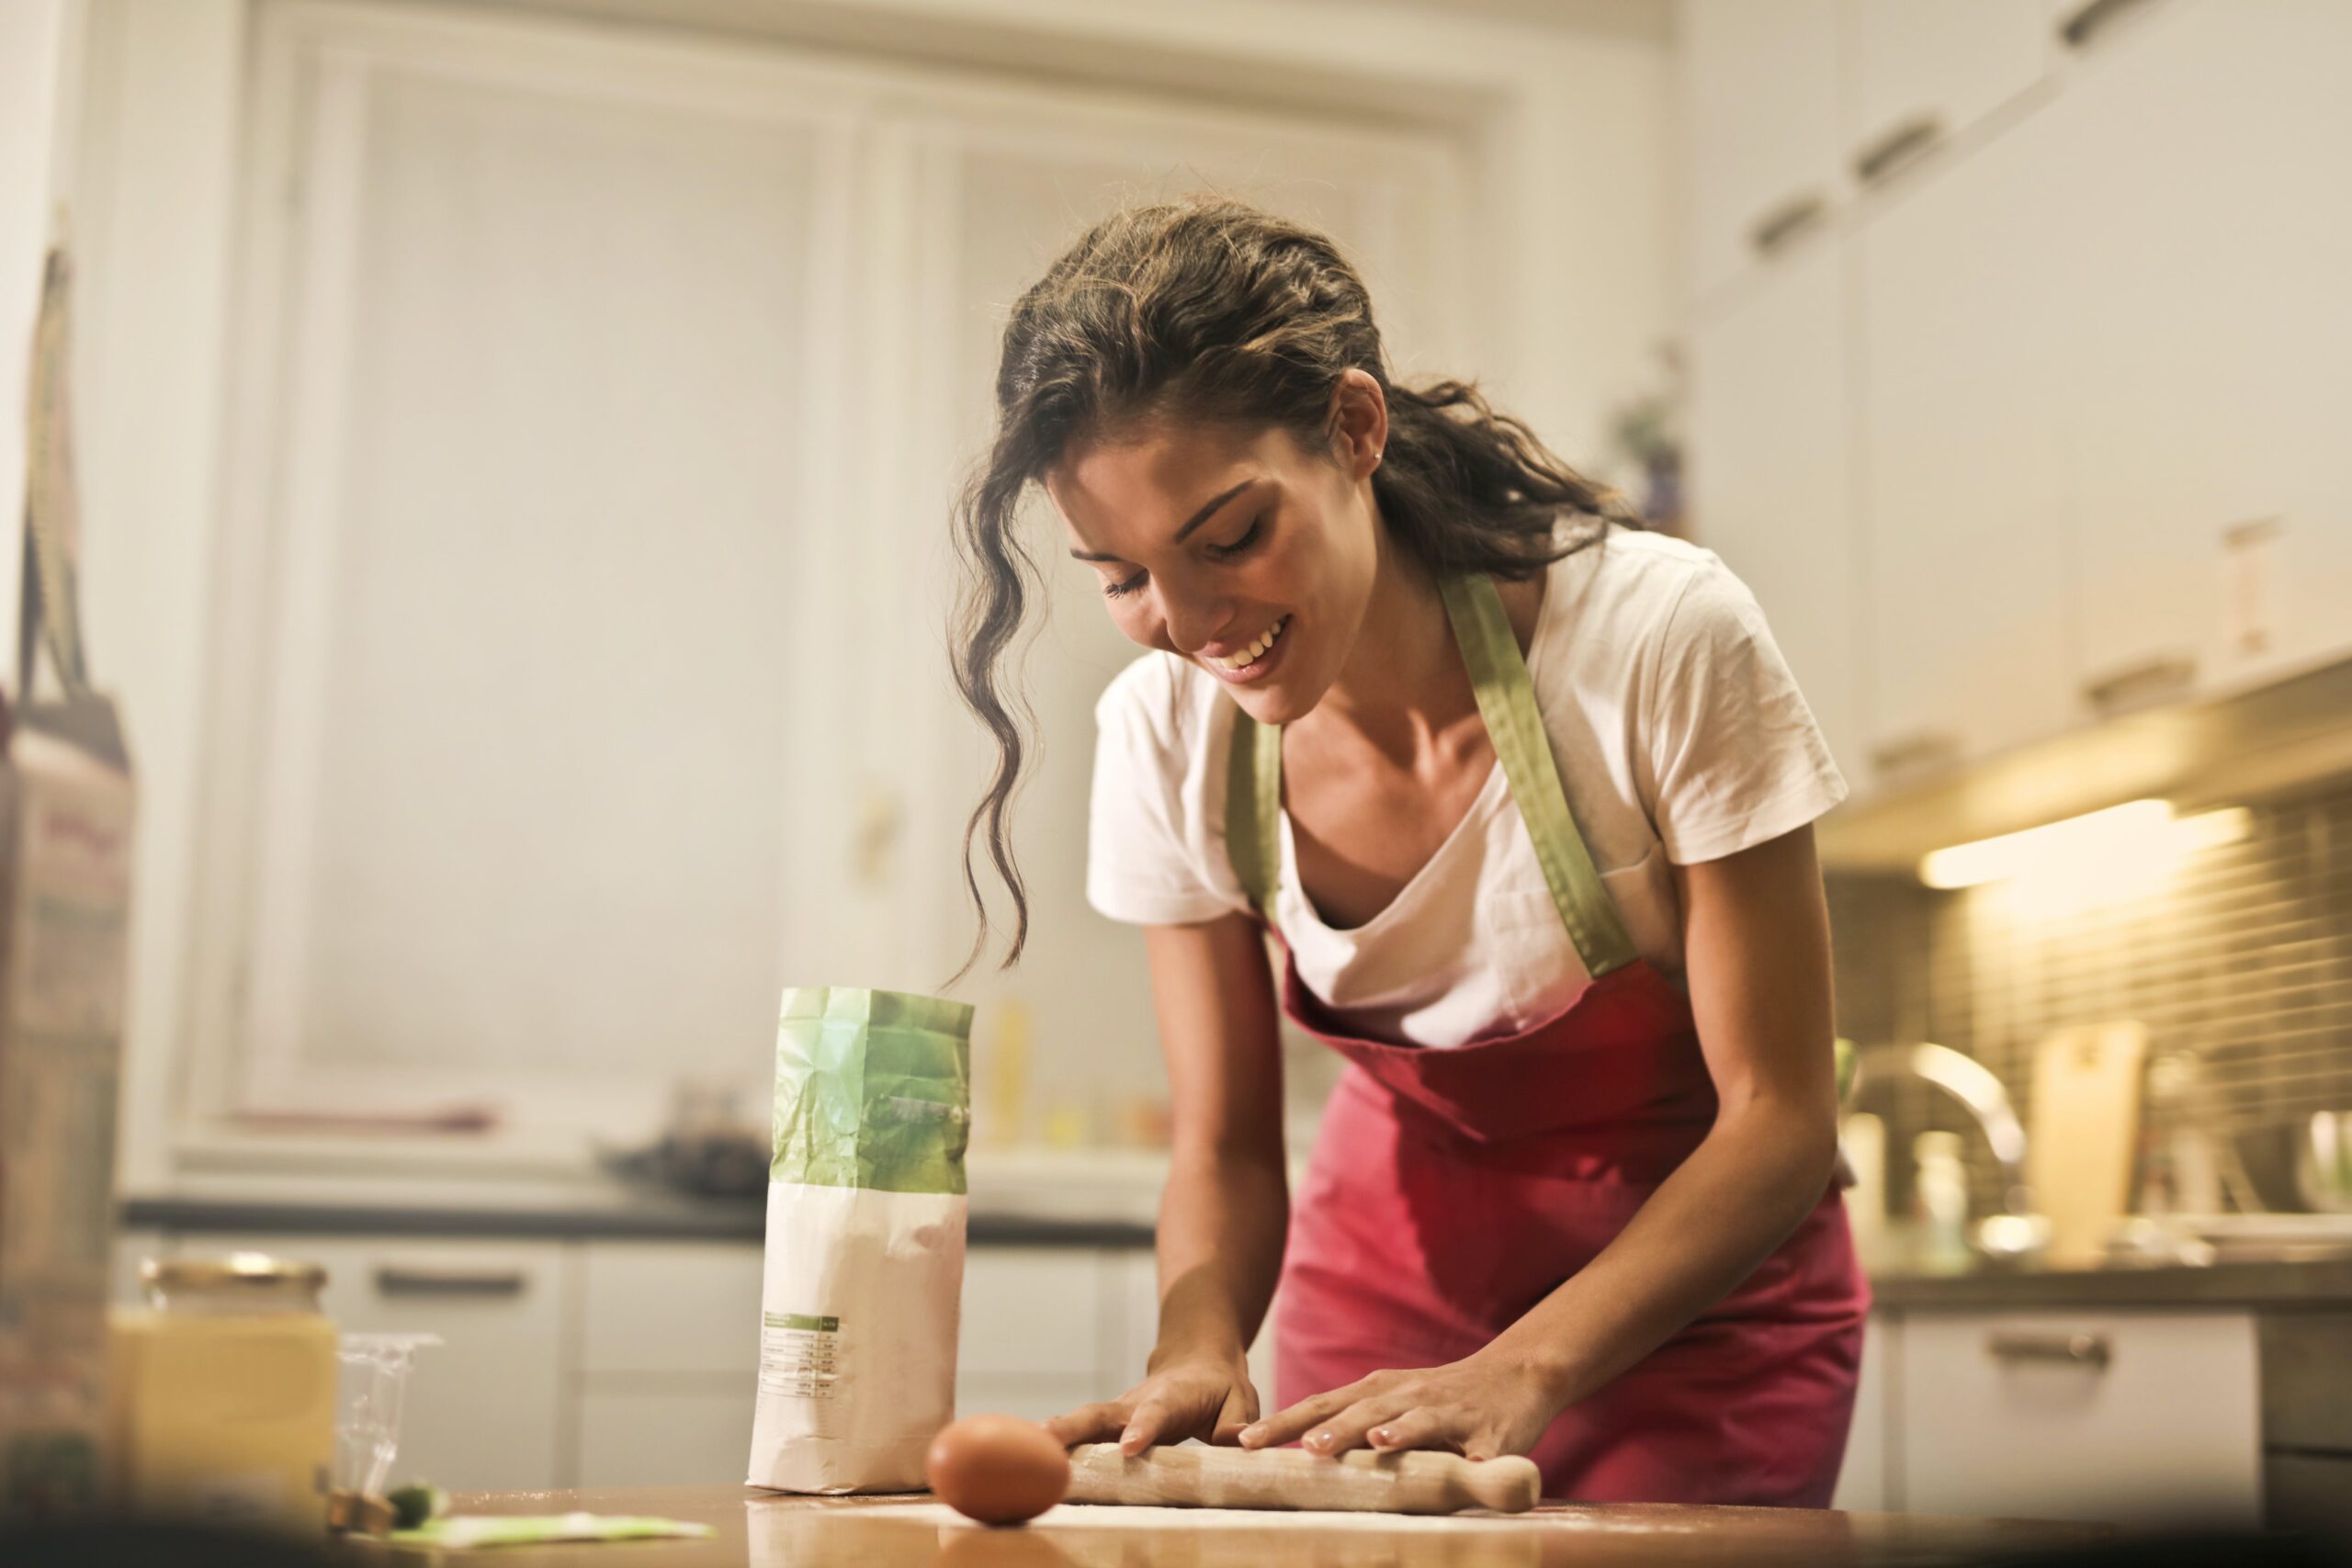 Scopri di più sull'articolo Regali Last Minute in Cucina : 10 Idee a Portata di “Click”